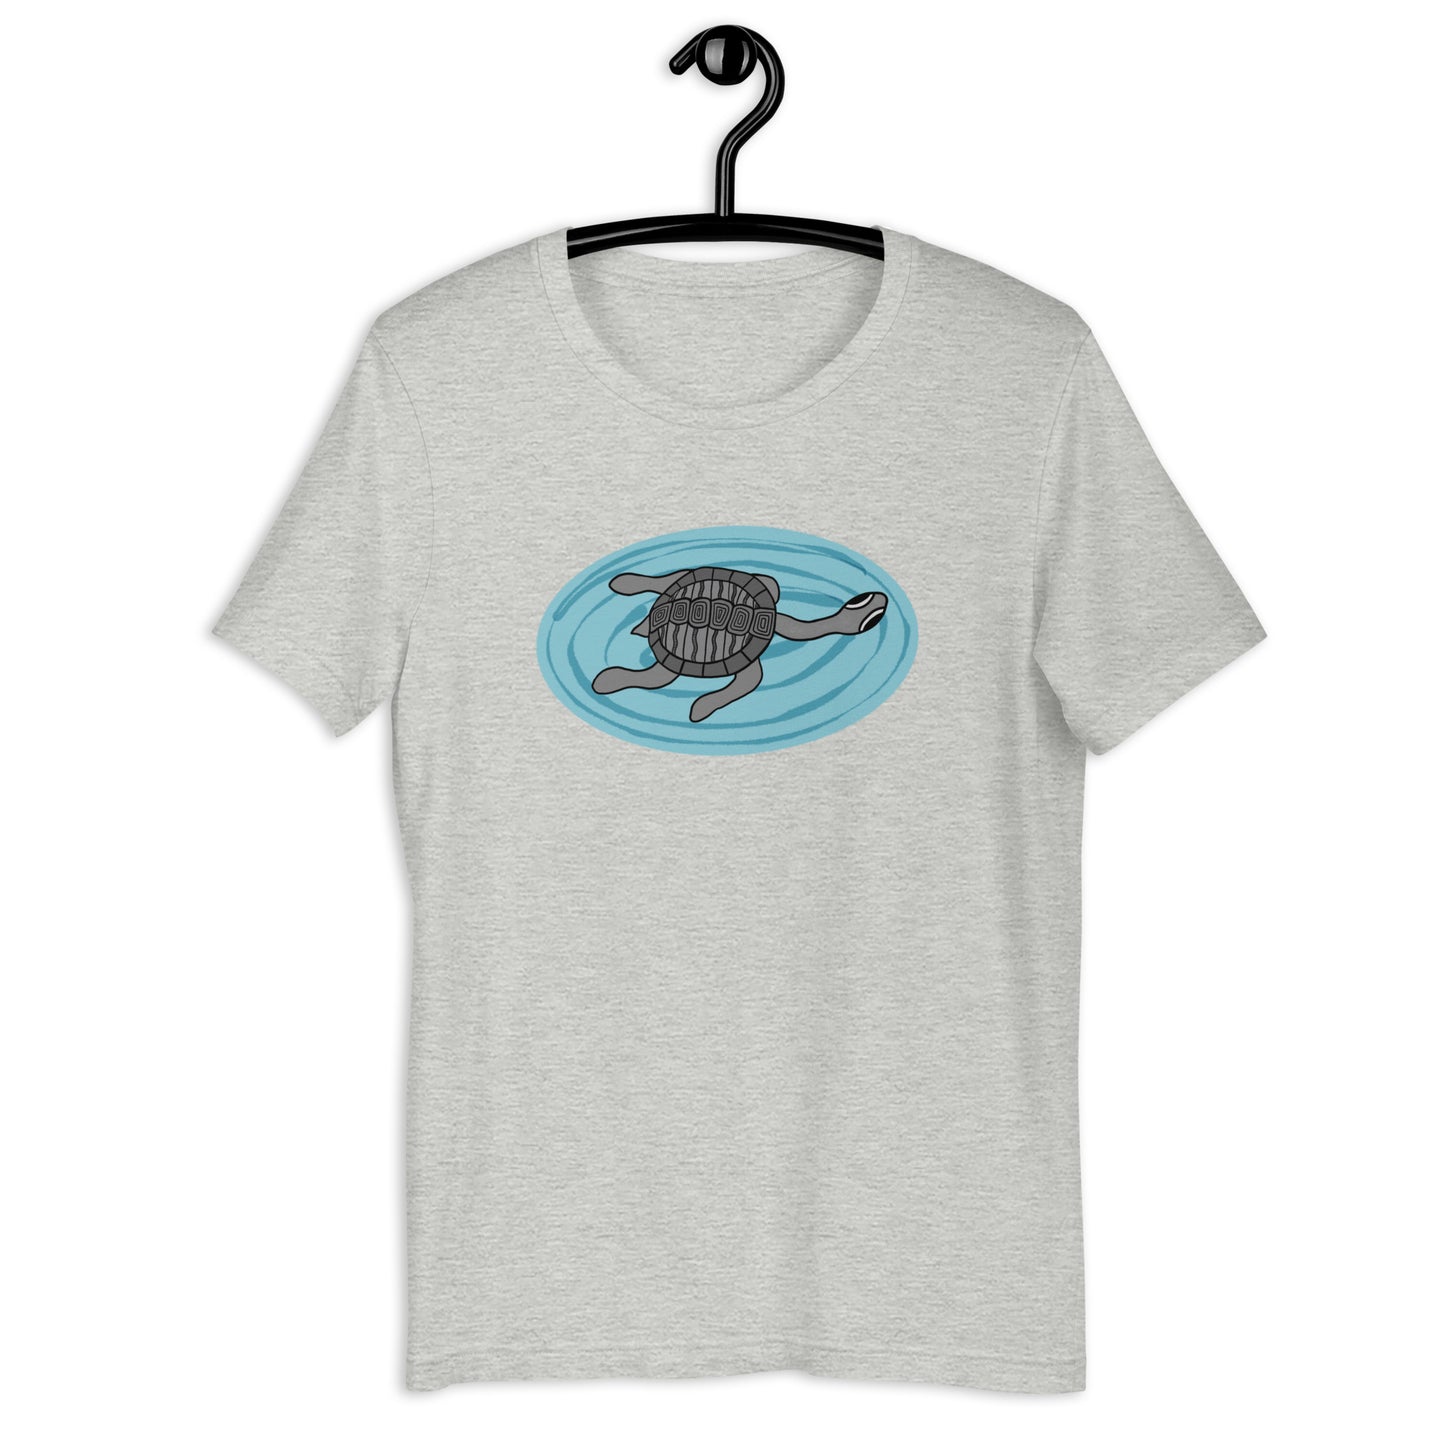 Long Neck Turtle Plus Size T-Shirt (Unisex)